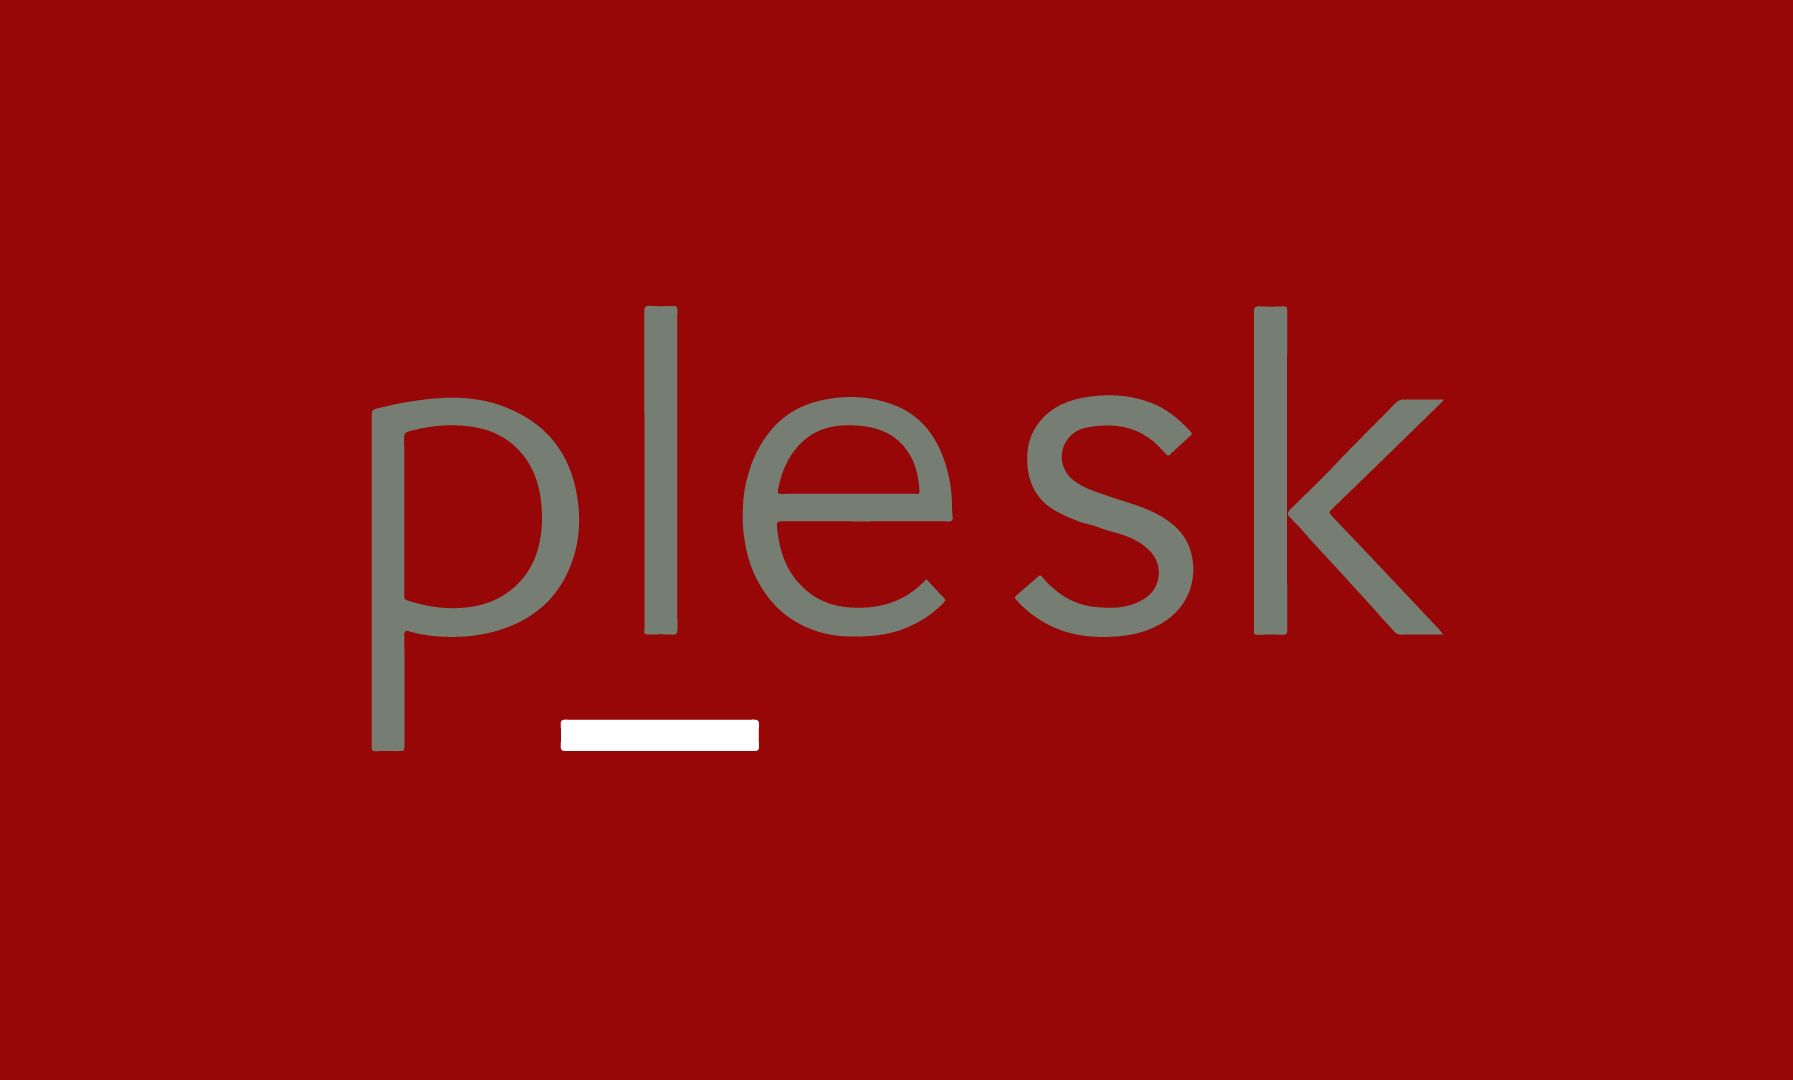 Plesk: Semplificazione e gestione avanzata per siti web